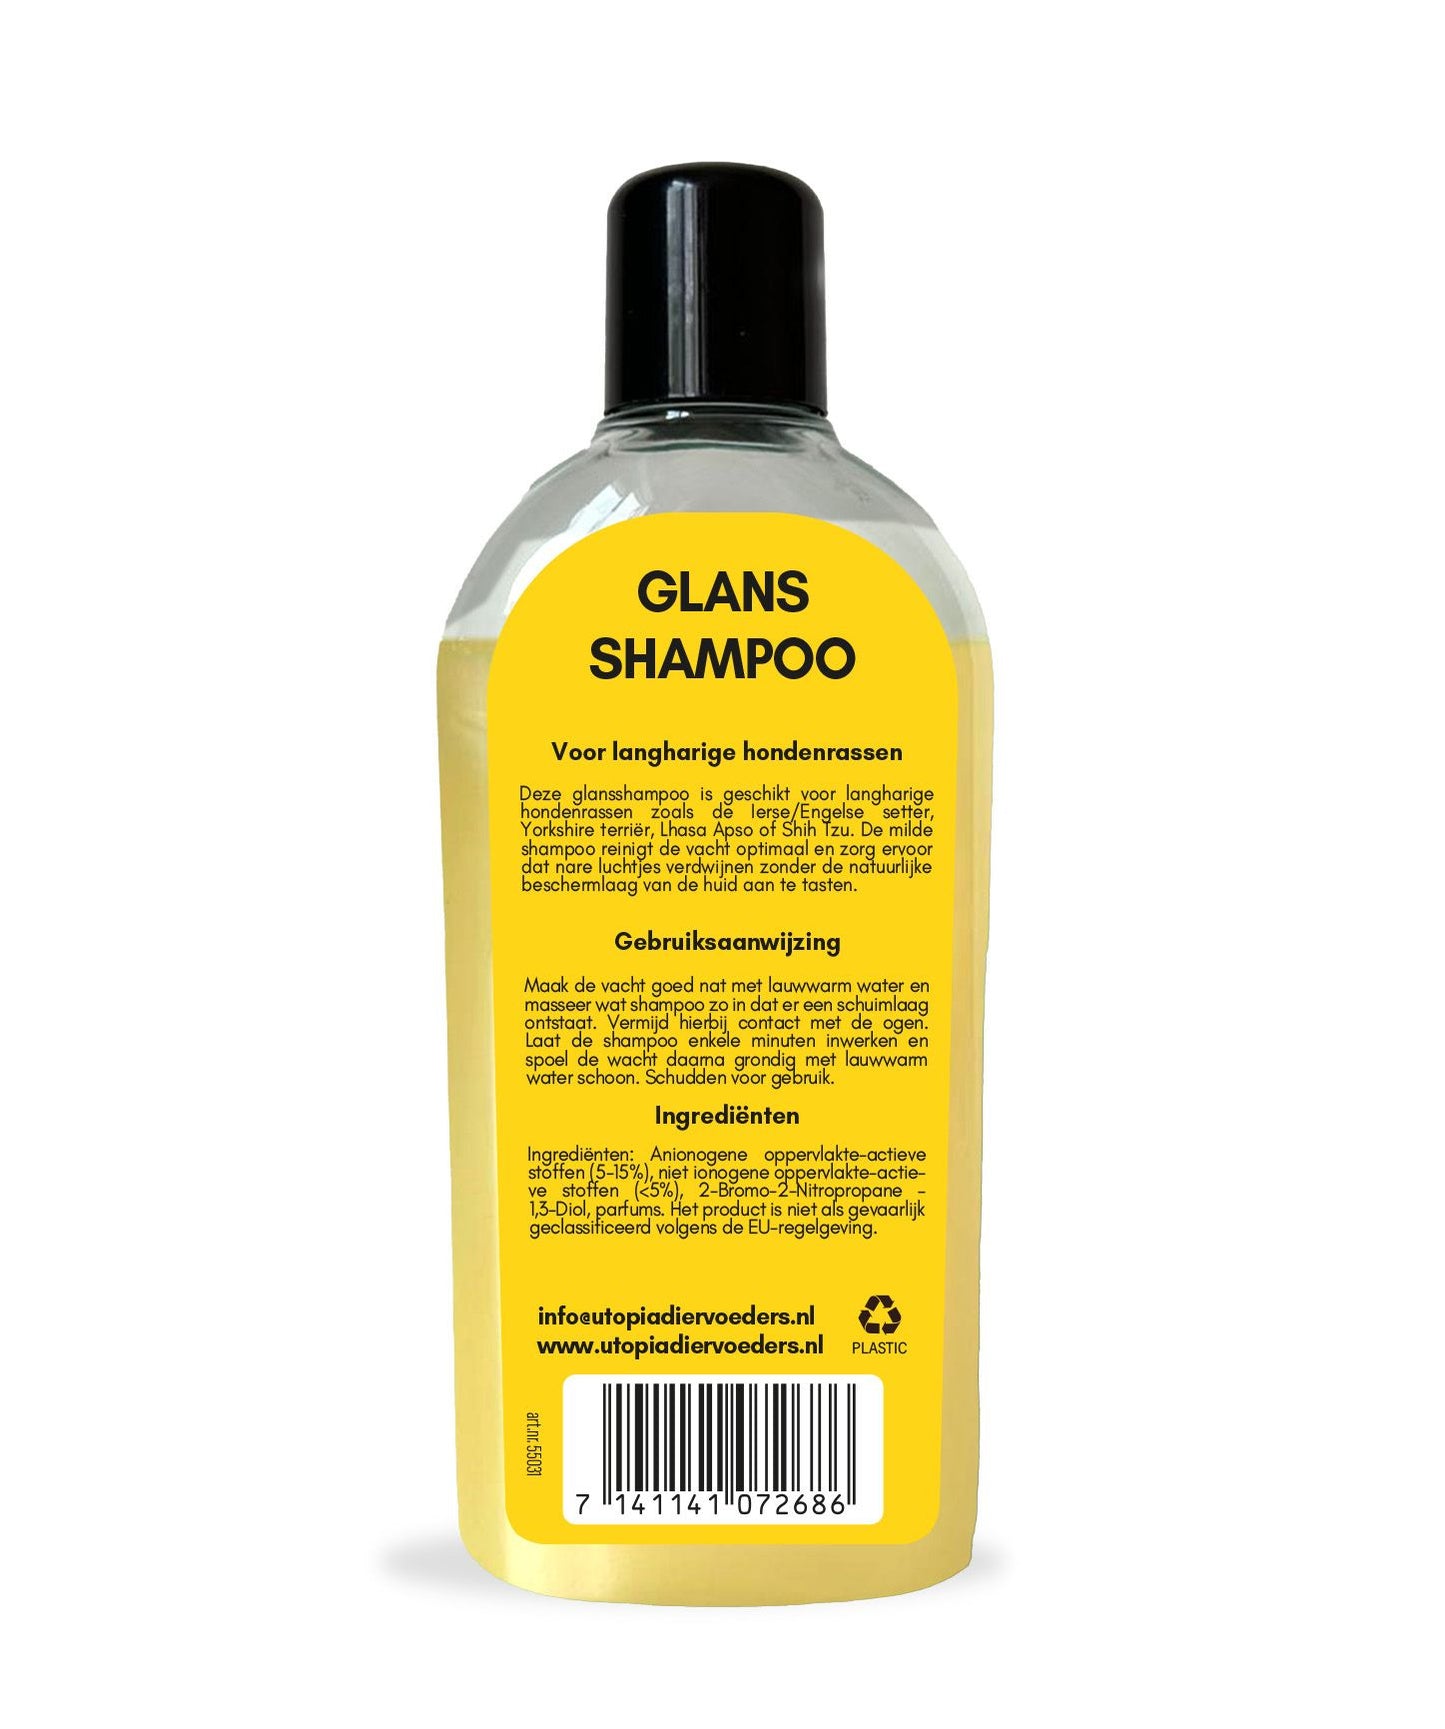 Glans shampoo